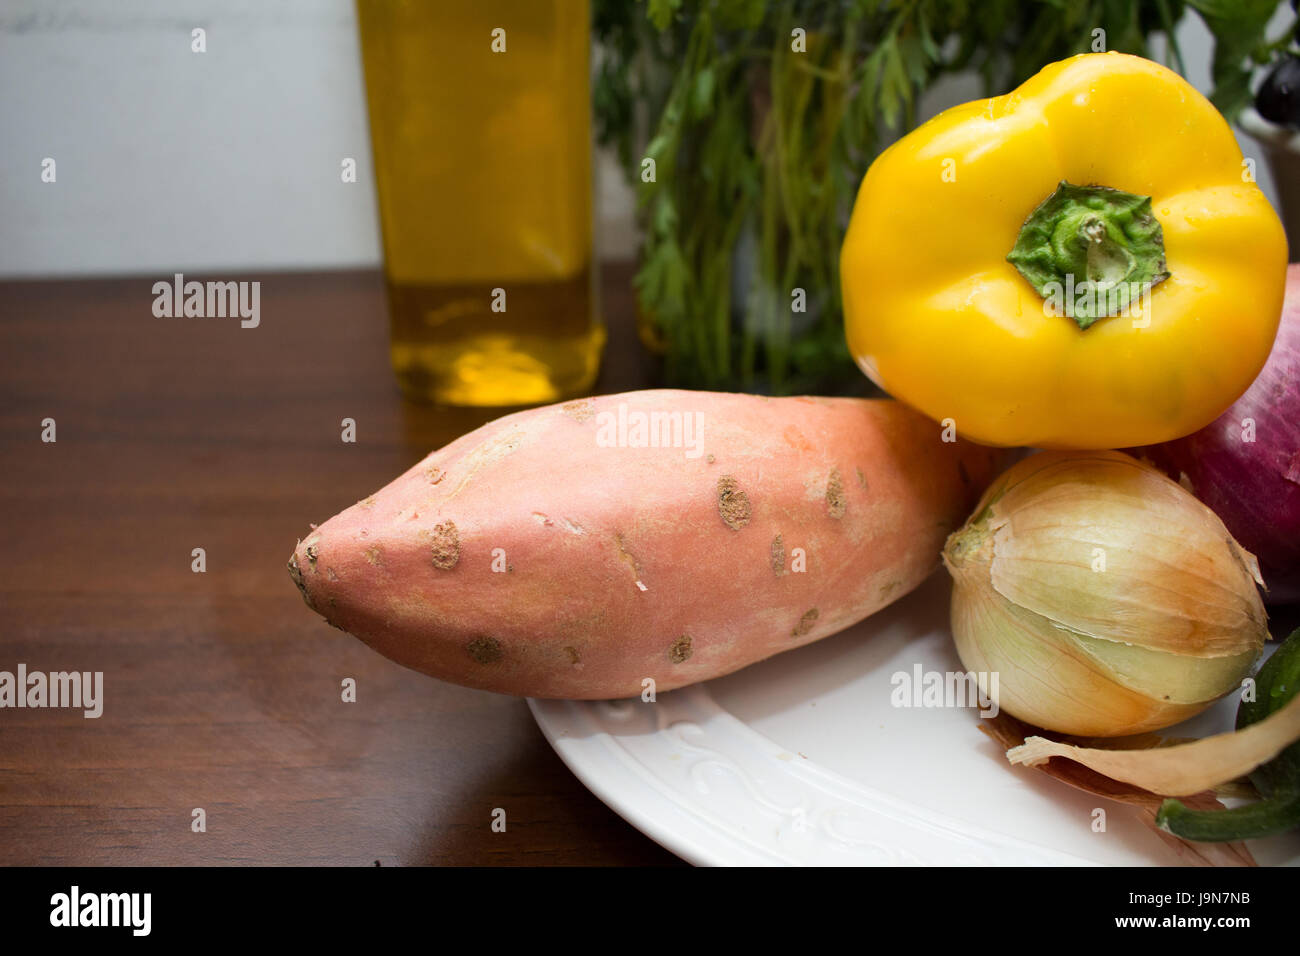 La patata dolce, il peperone giallo e le cipolle su una piastra su un tavolo Foto Stock